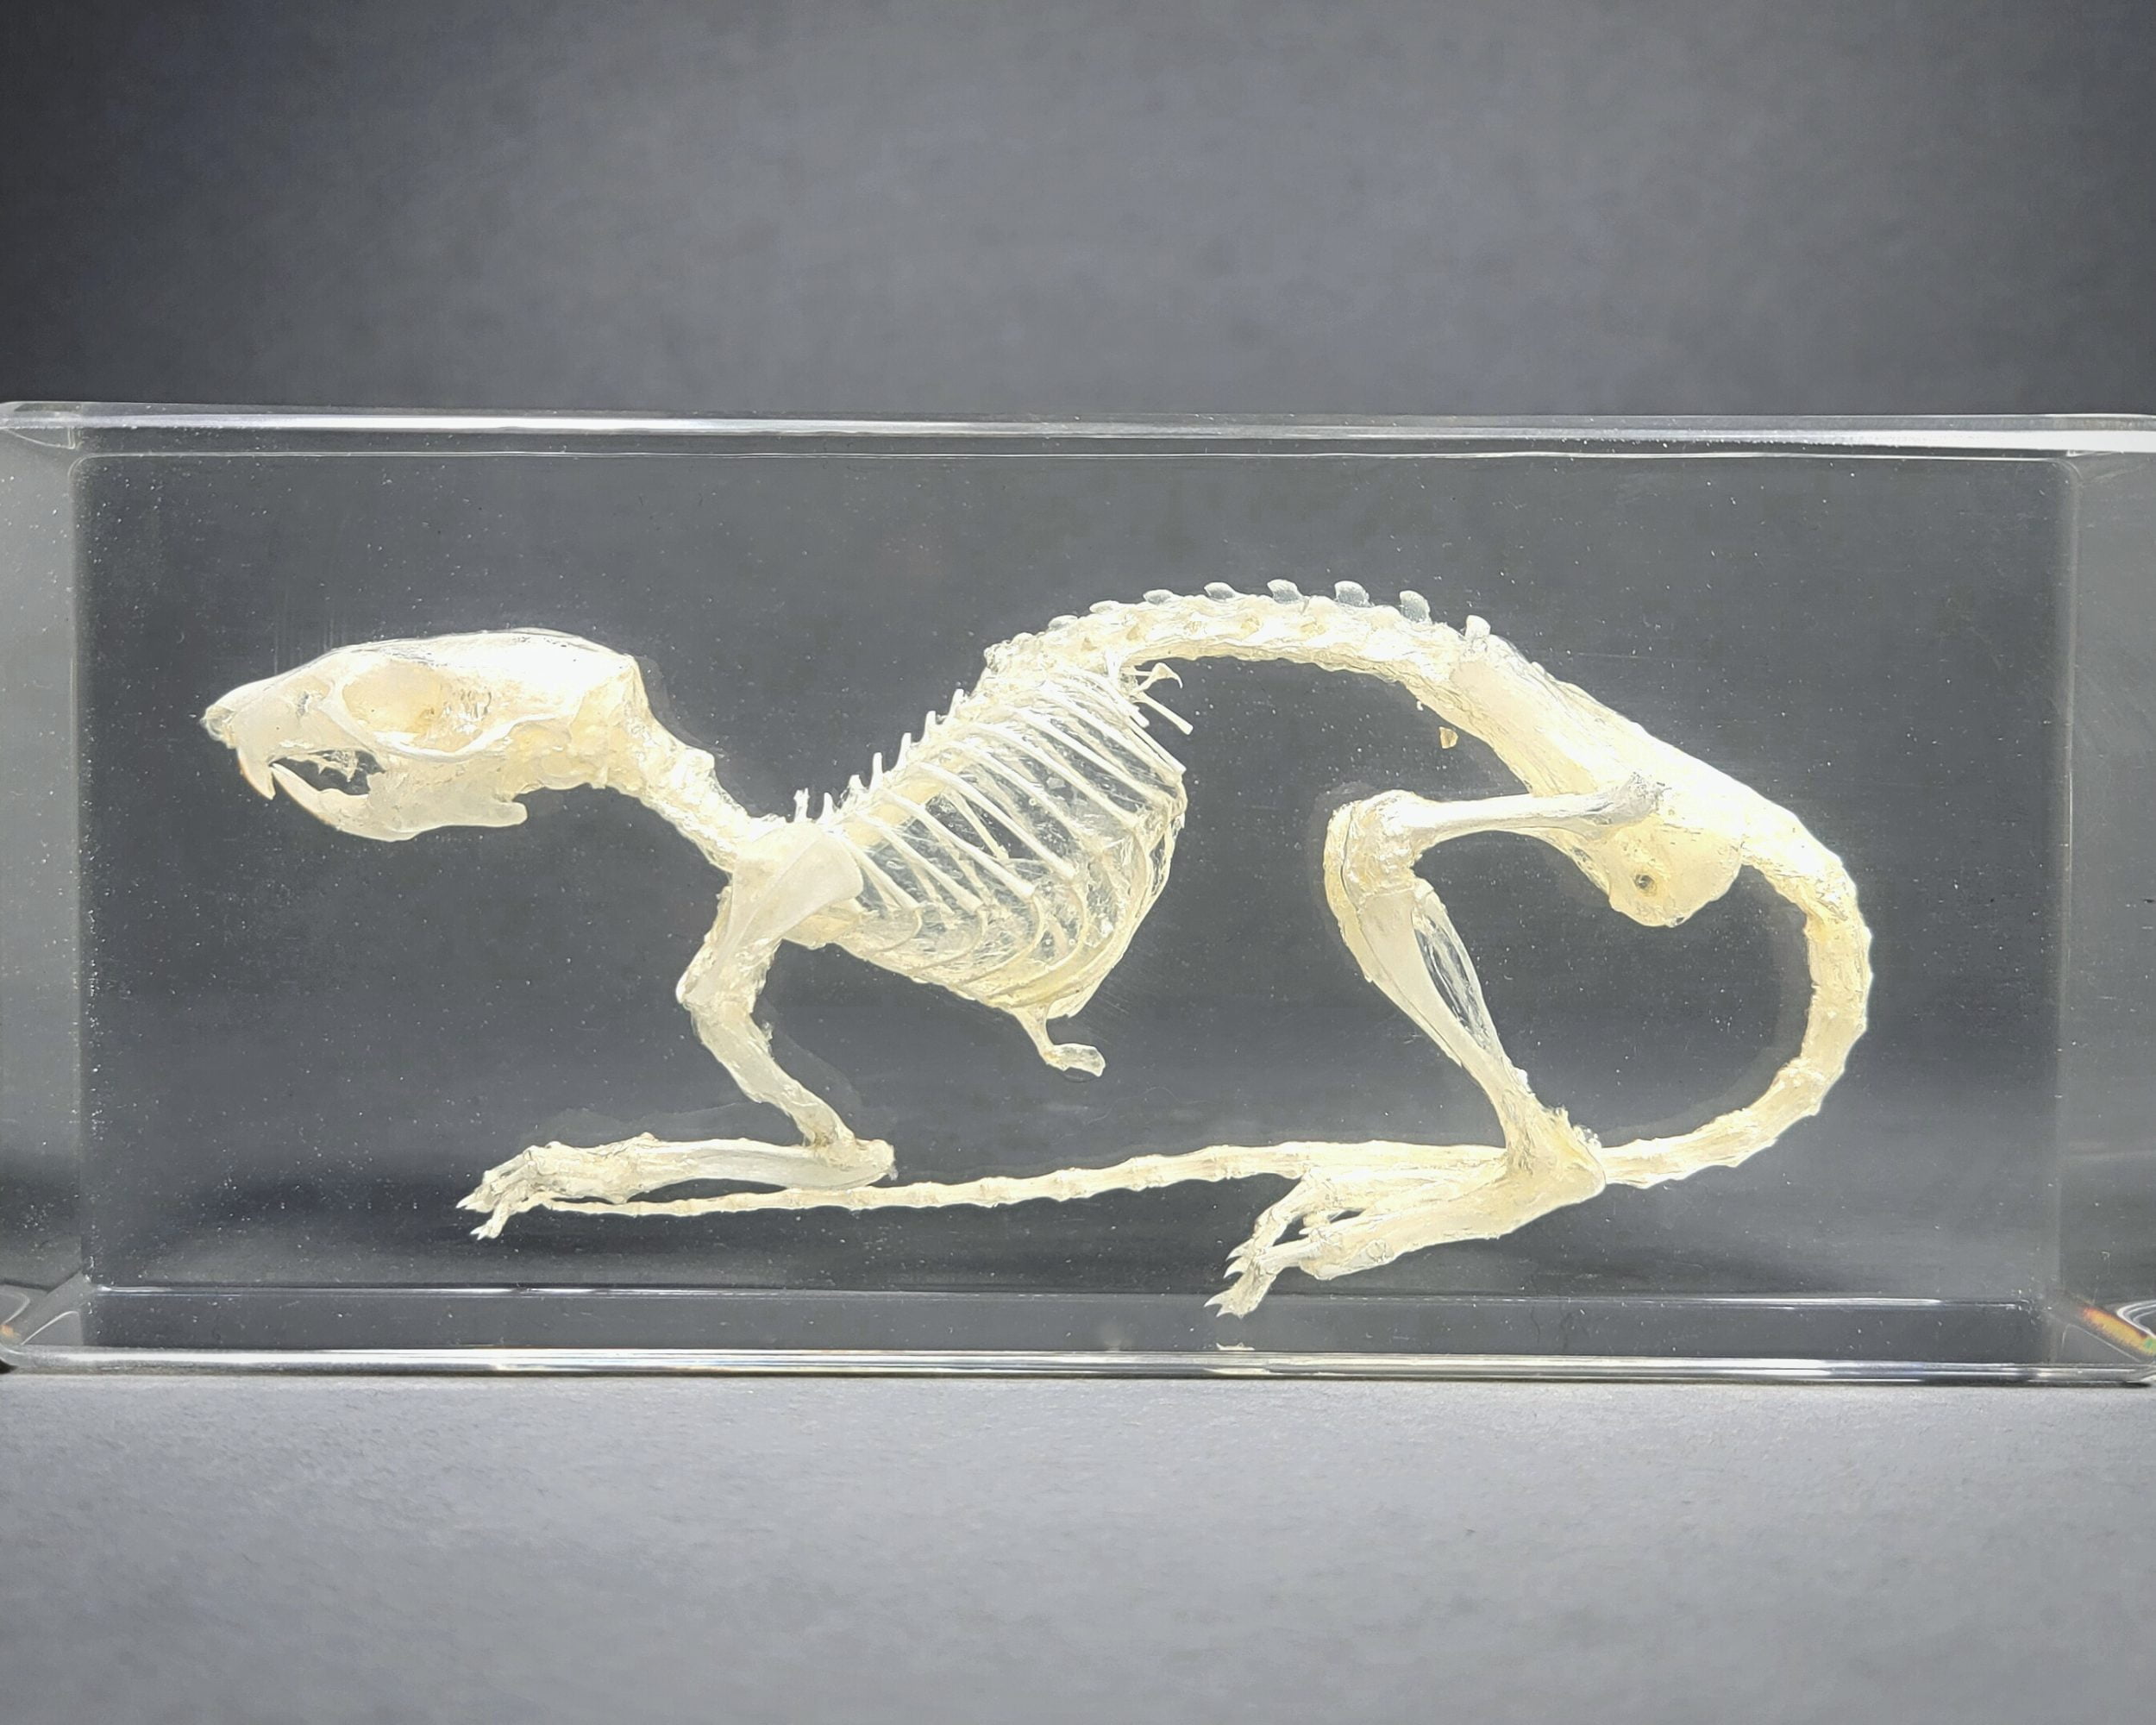 Real Rat Skeleton in Resin, Rat Skull, Preserved Rat Skeleton